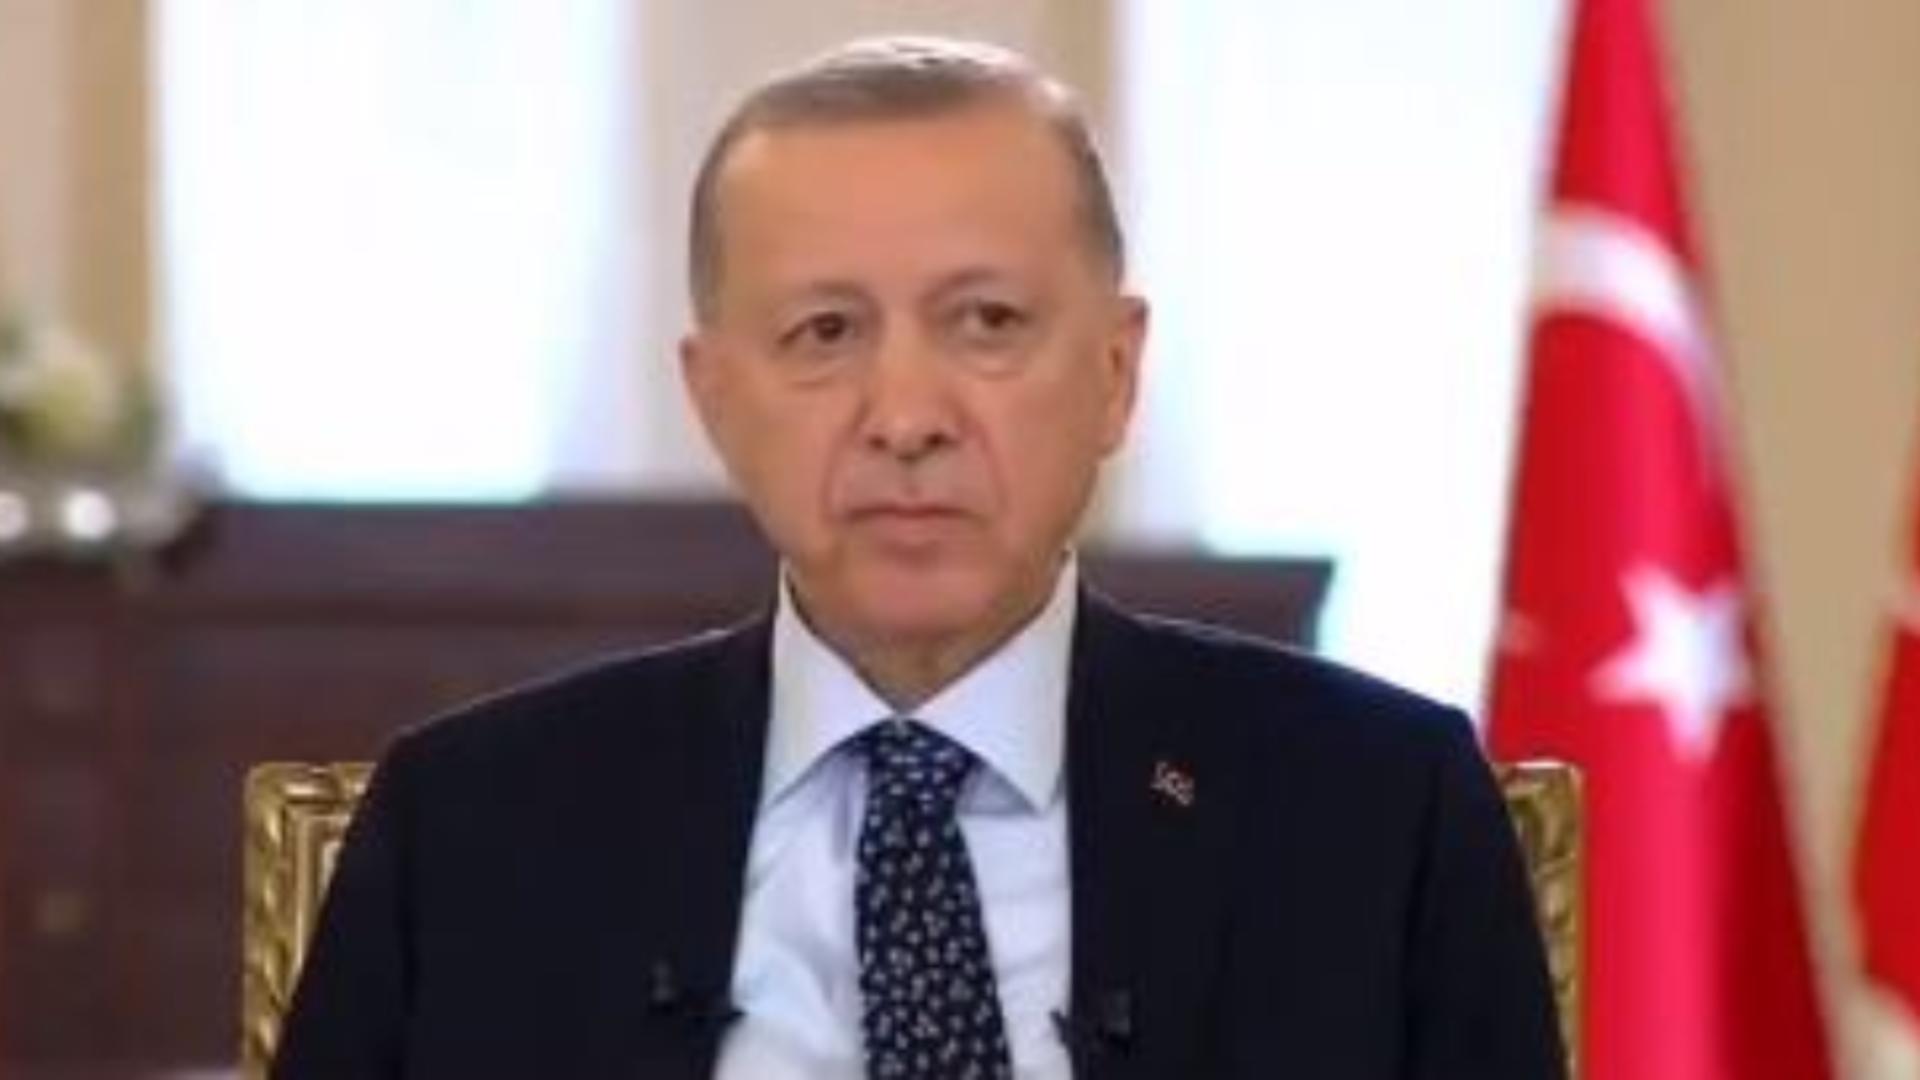 Preşedintele turc Erdogan afirmă că alegerile locale din martie vor fi ultimele în care se implică